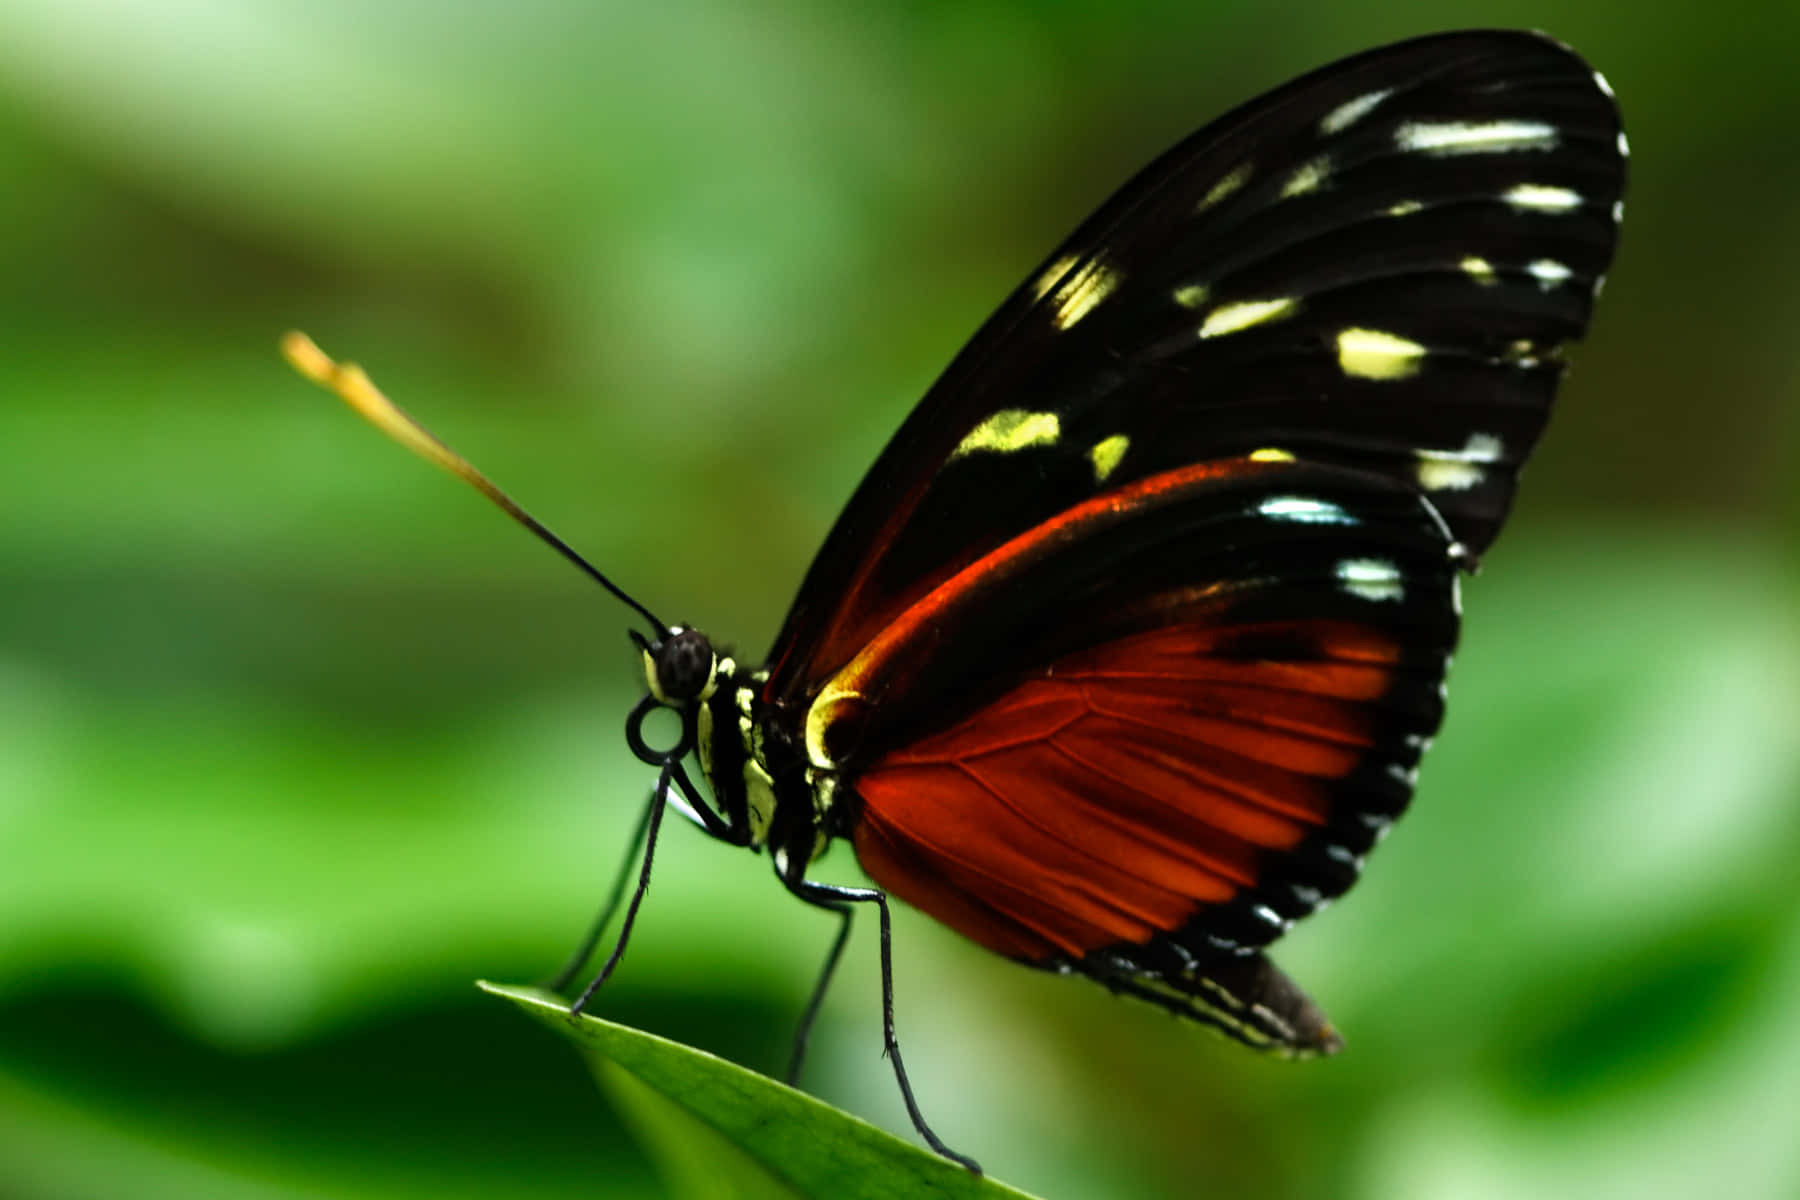 A butterfly in profile, fluttering wings in delight